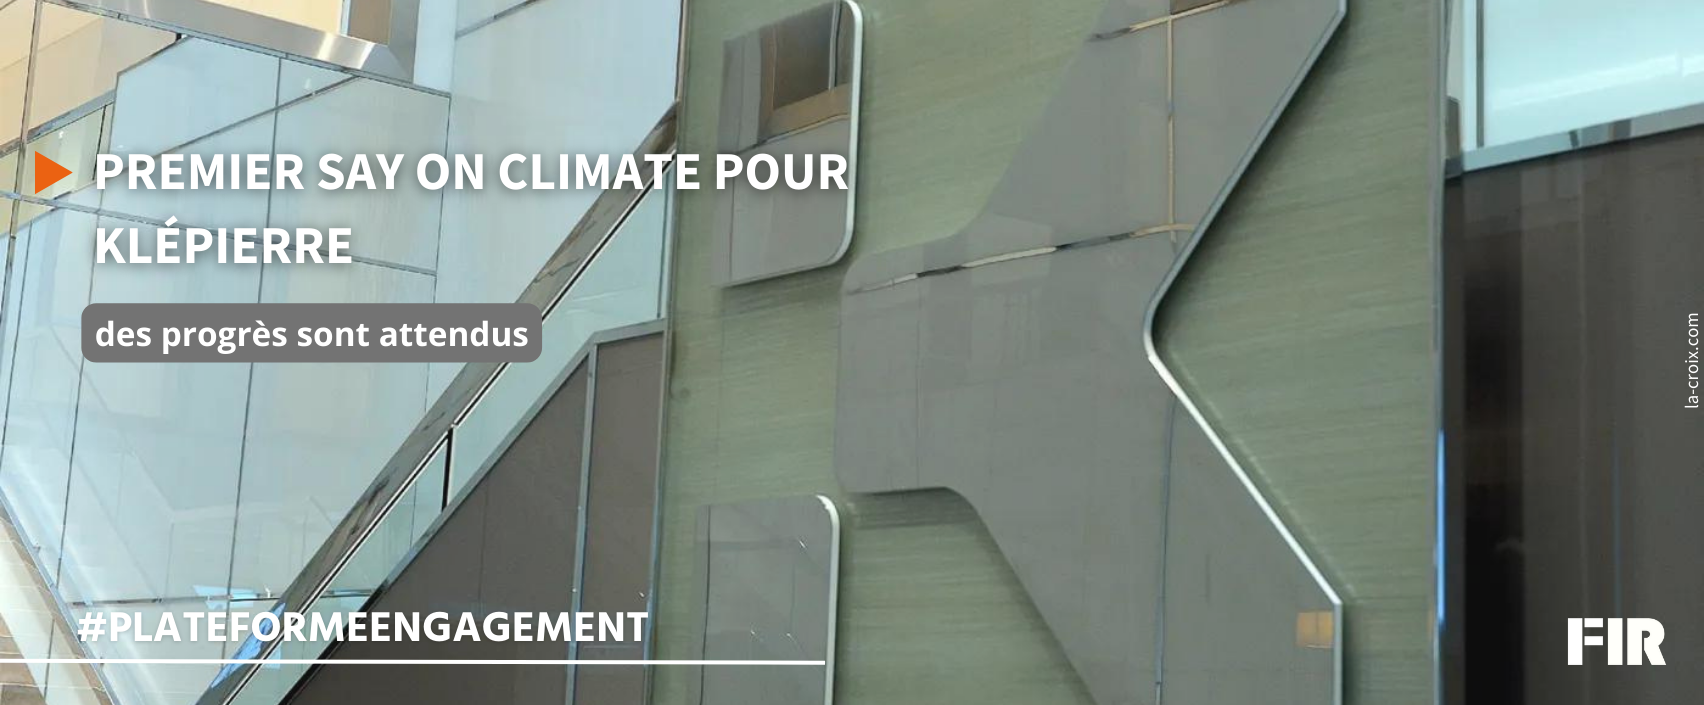 En 2022, le FIR avait réalisé des fiches évaluant le degré d'alignement des Say on Climate français avec ses recommandations. Cette année, le FIR réitère l'exercice et s'associe avec l'ADEME [...]